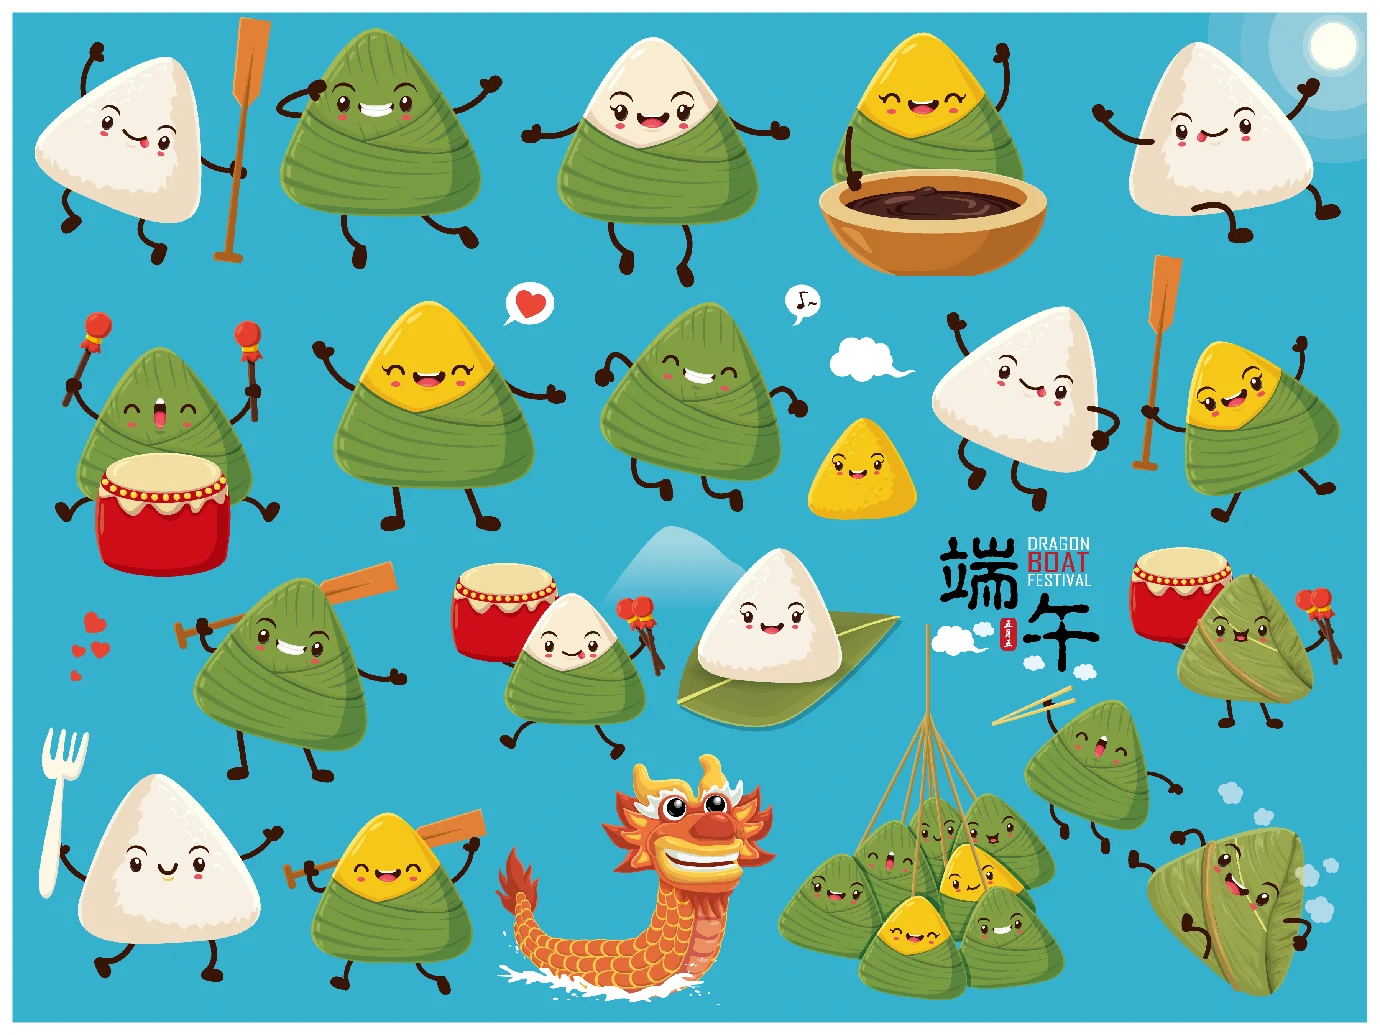 中国传统节日卡通手绘端午节赛龙舟粽子插画海报AI矢量设计素材【039】